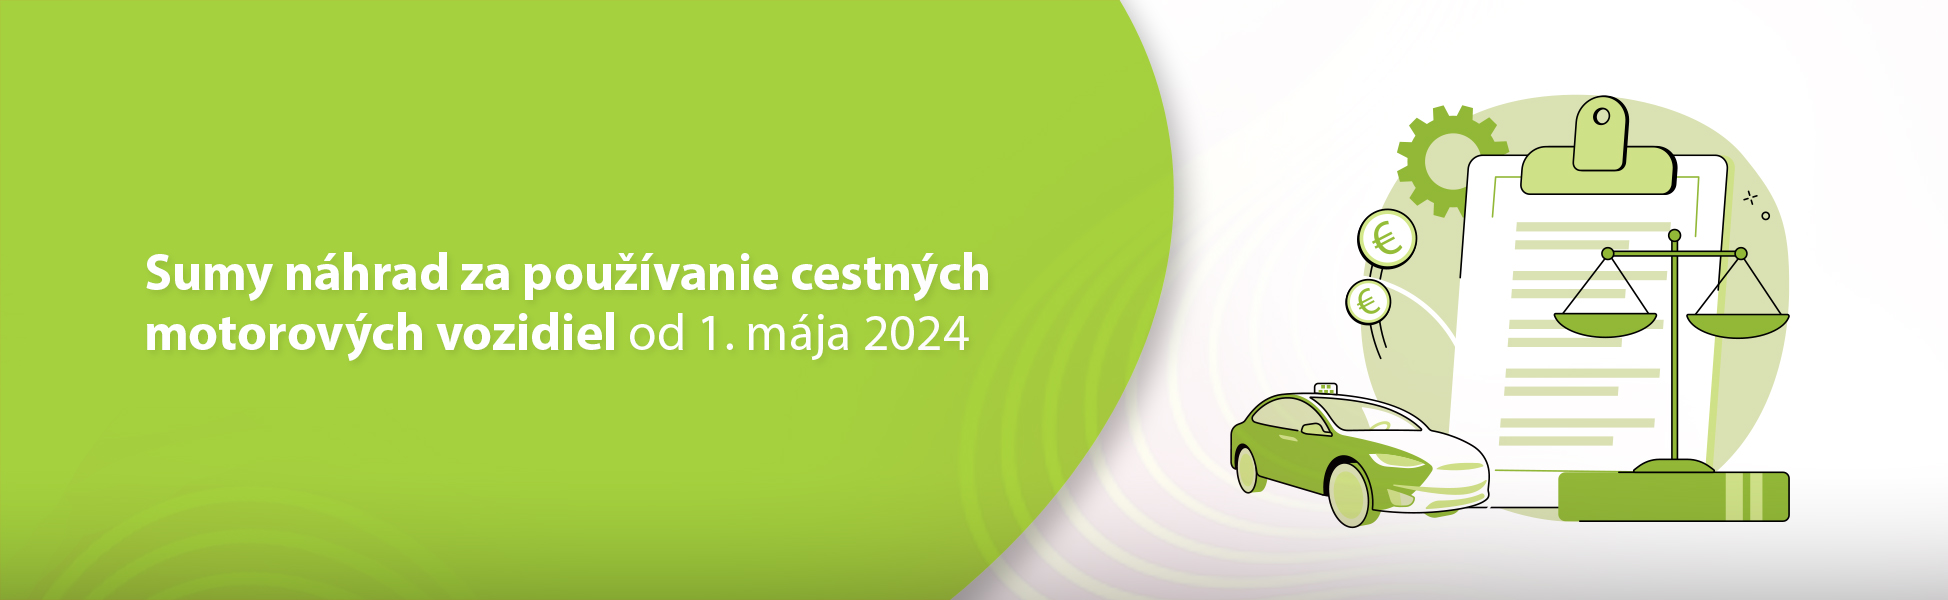 Sumy nhrad za pouvanie cestnch motorovch vozidiel od 1. mja 2024